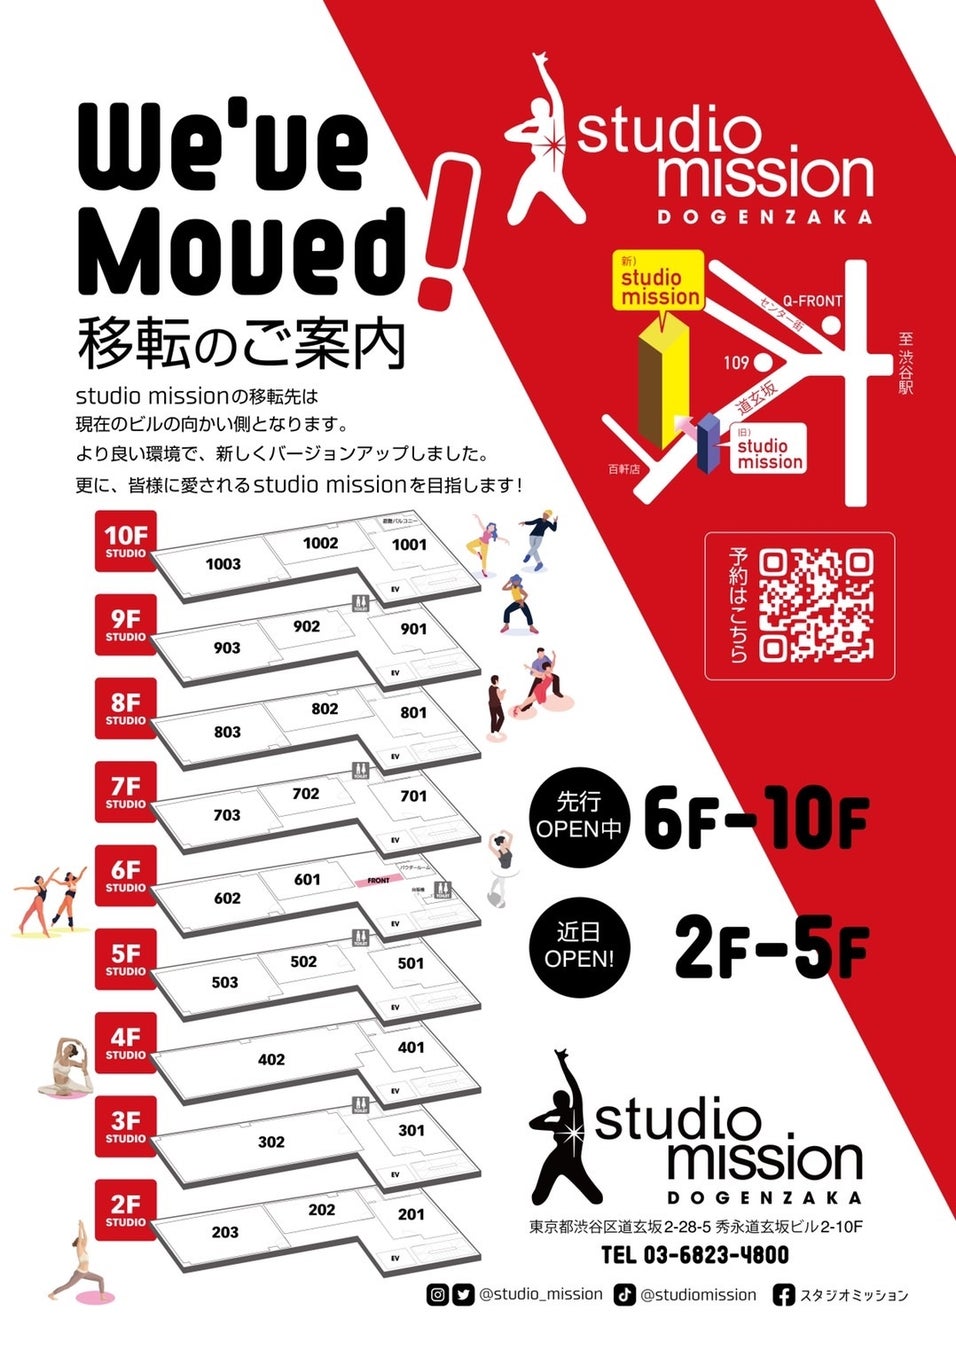 渋谷の人気スタジオ「studio mission」が移転、現在先行オープン中の6階から10階の様子をさらに追加で写真付きでご紹介！